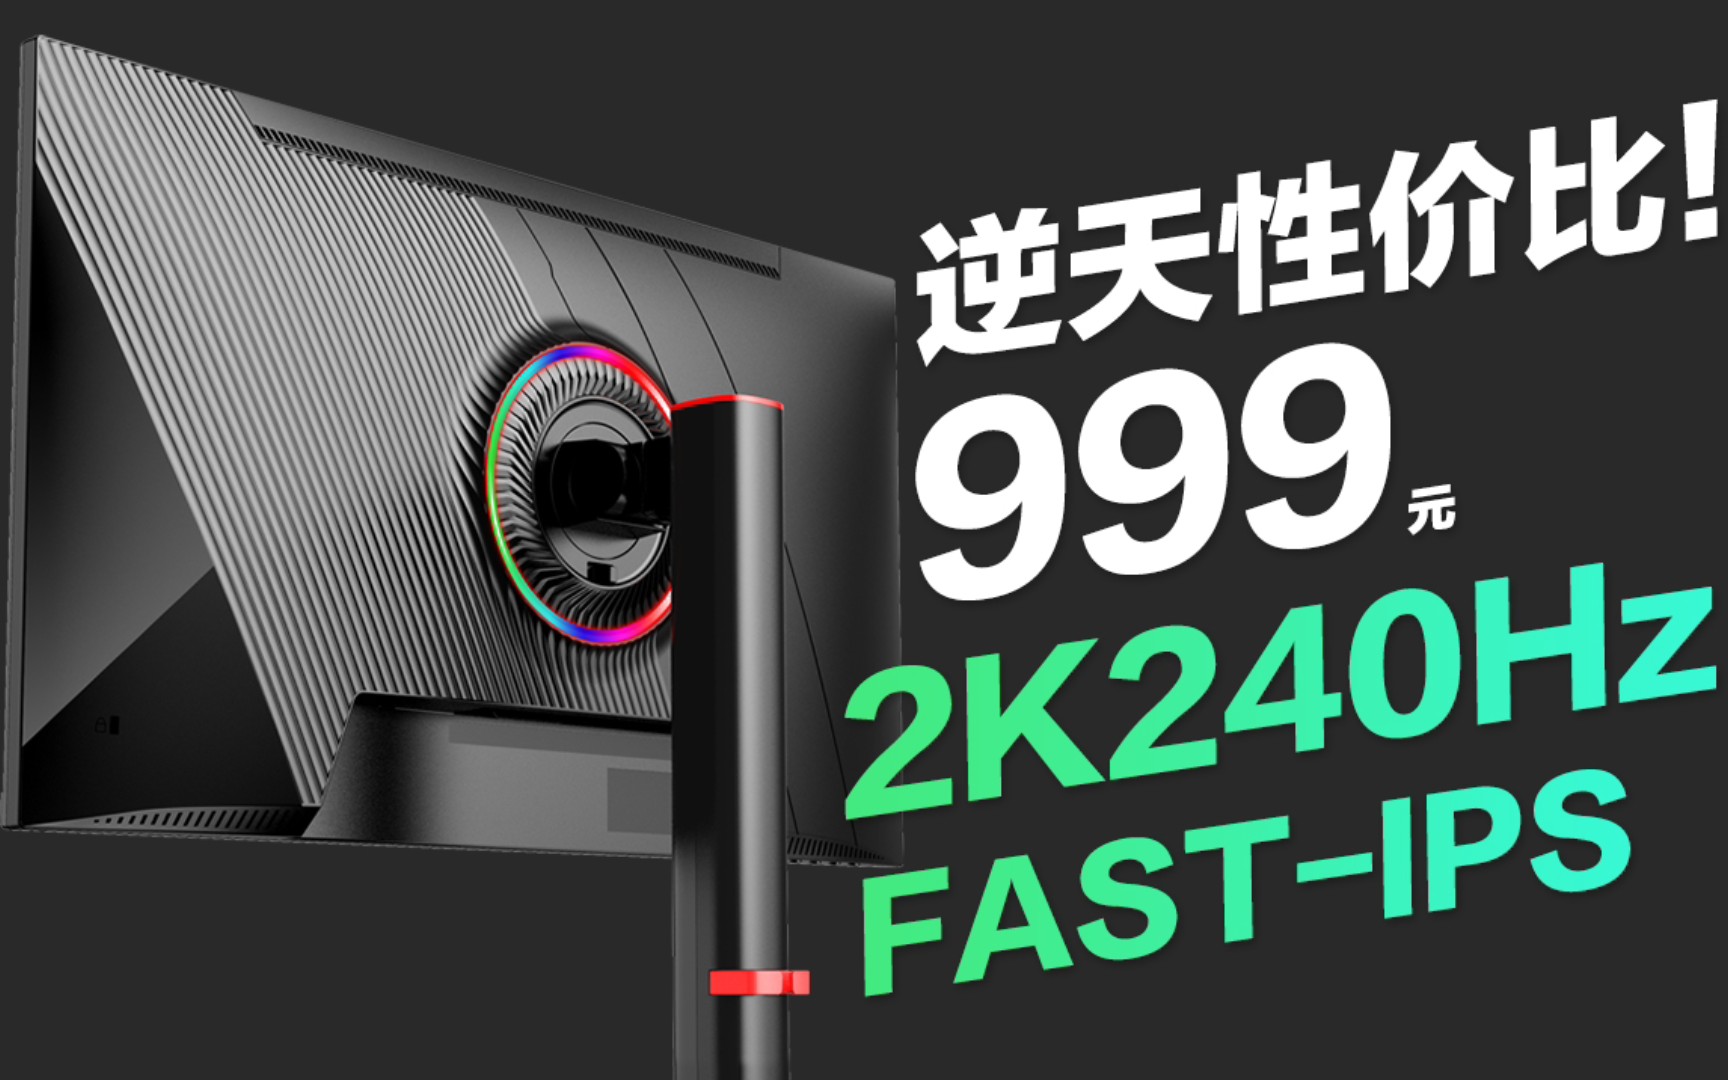 （逆天性价比）999元 2K240Hz FAST-IPS 首批评价已出！低价高性能电竞显示器！